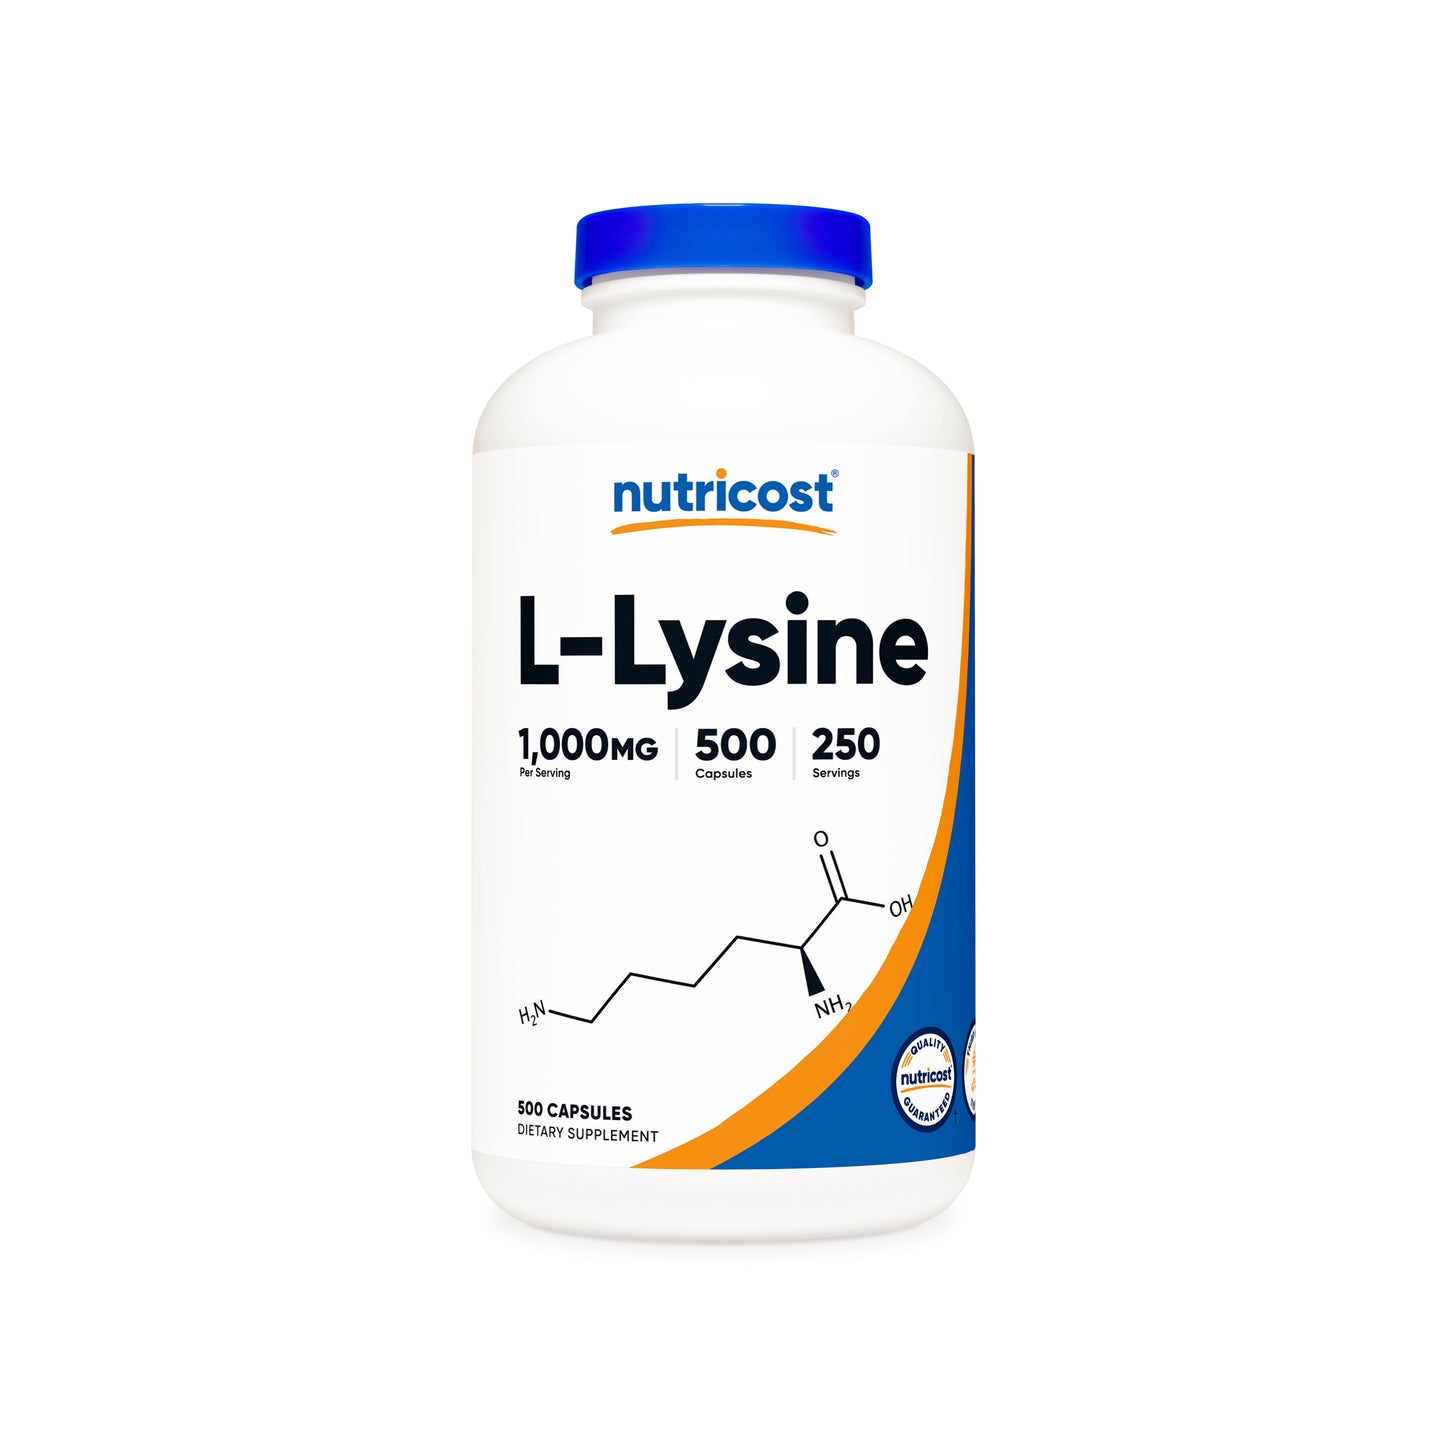 L-Lysine Capsules